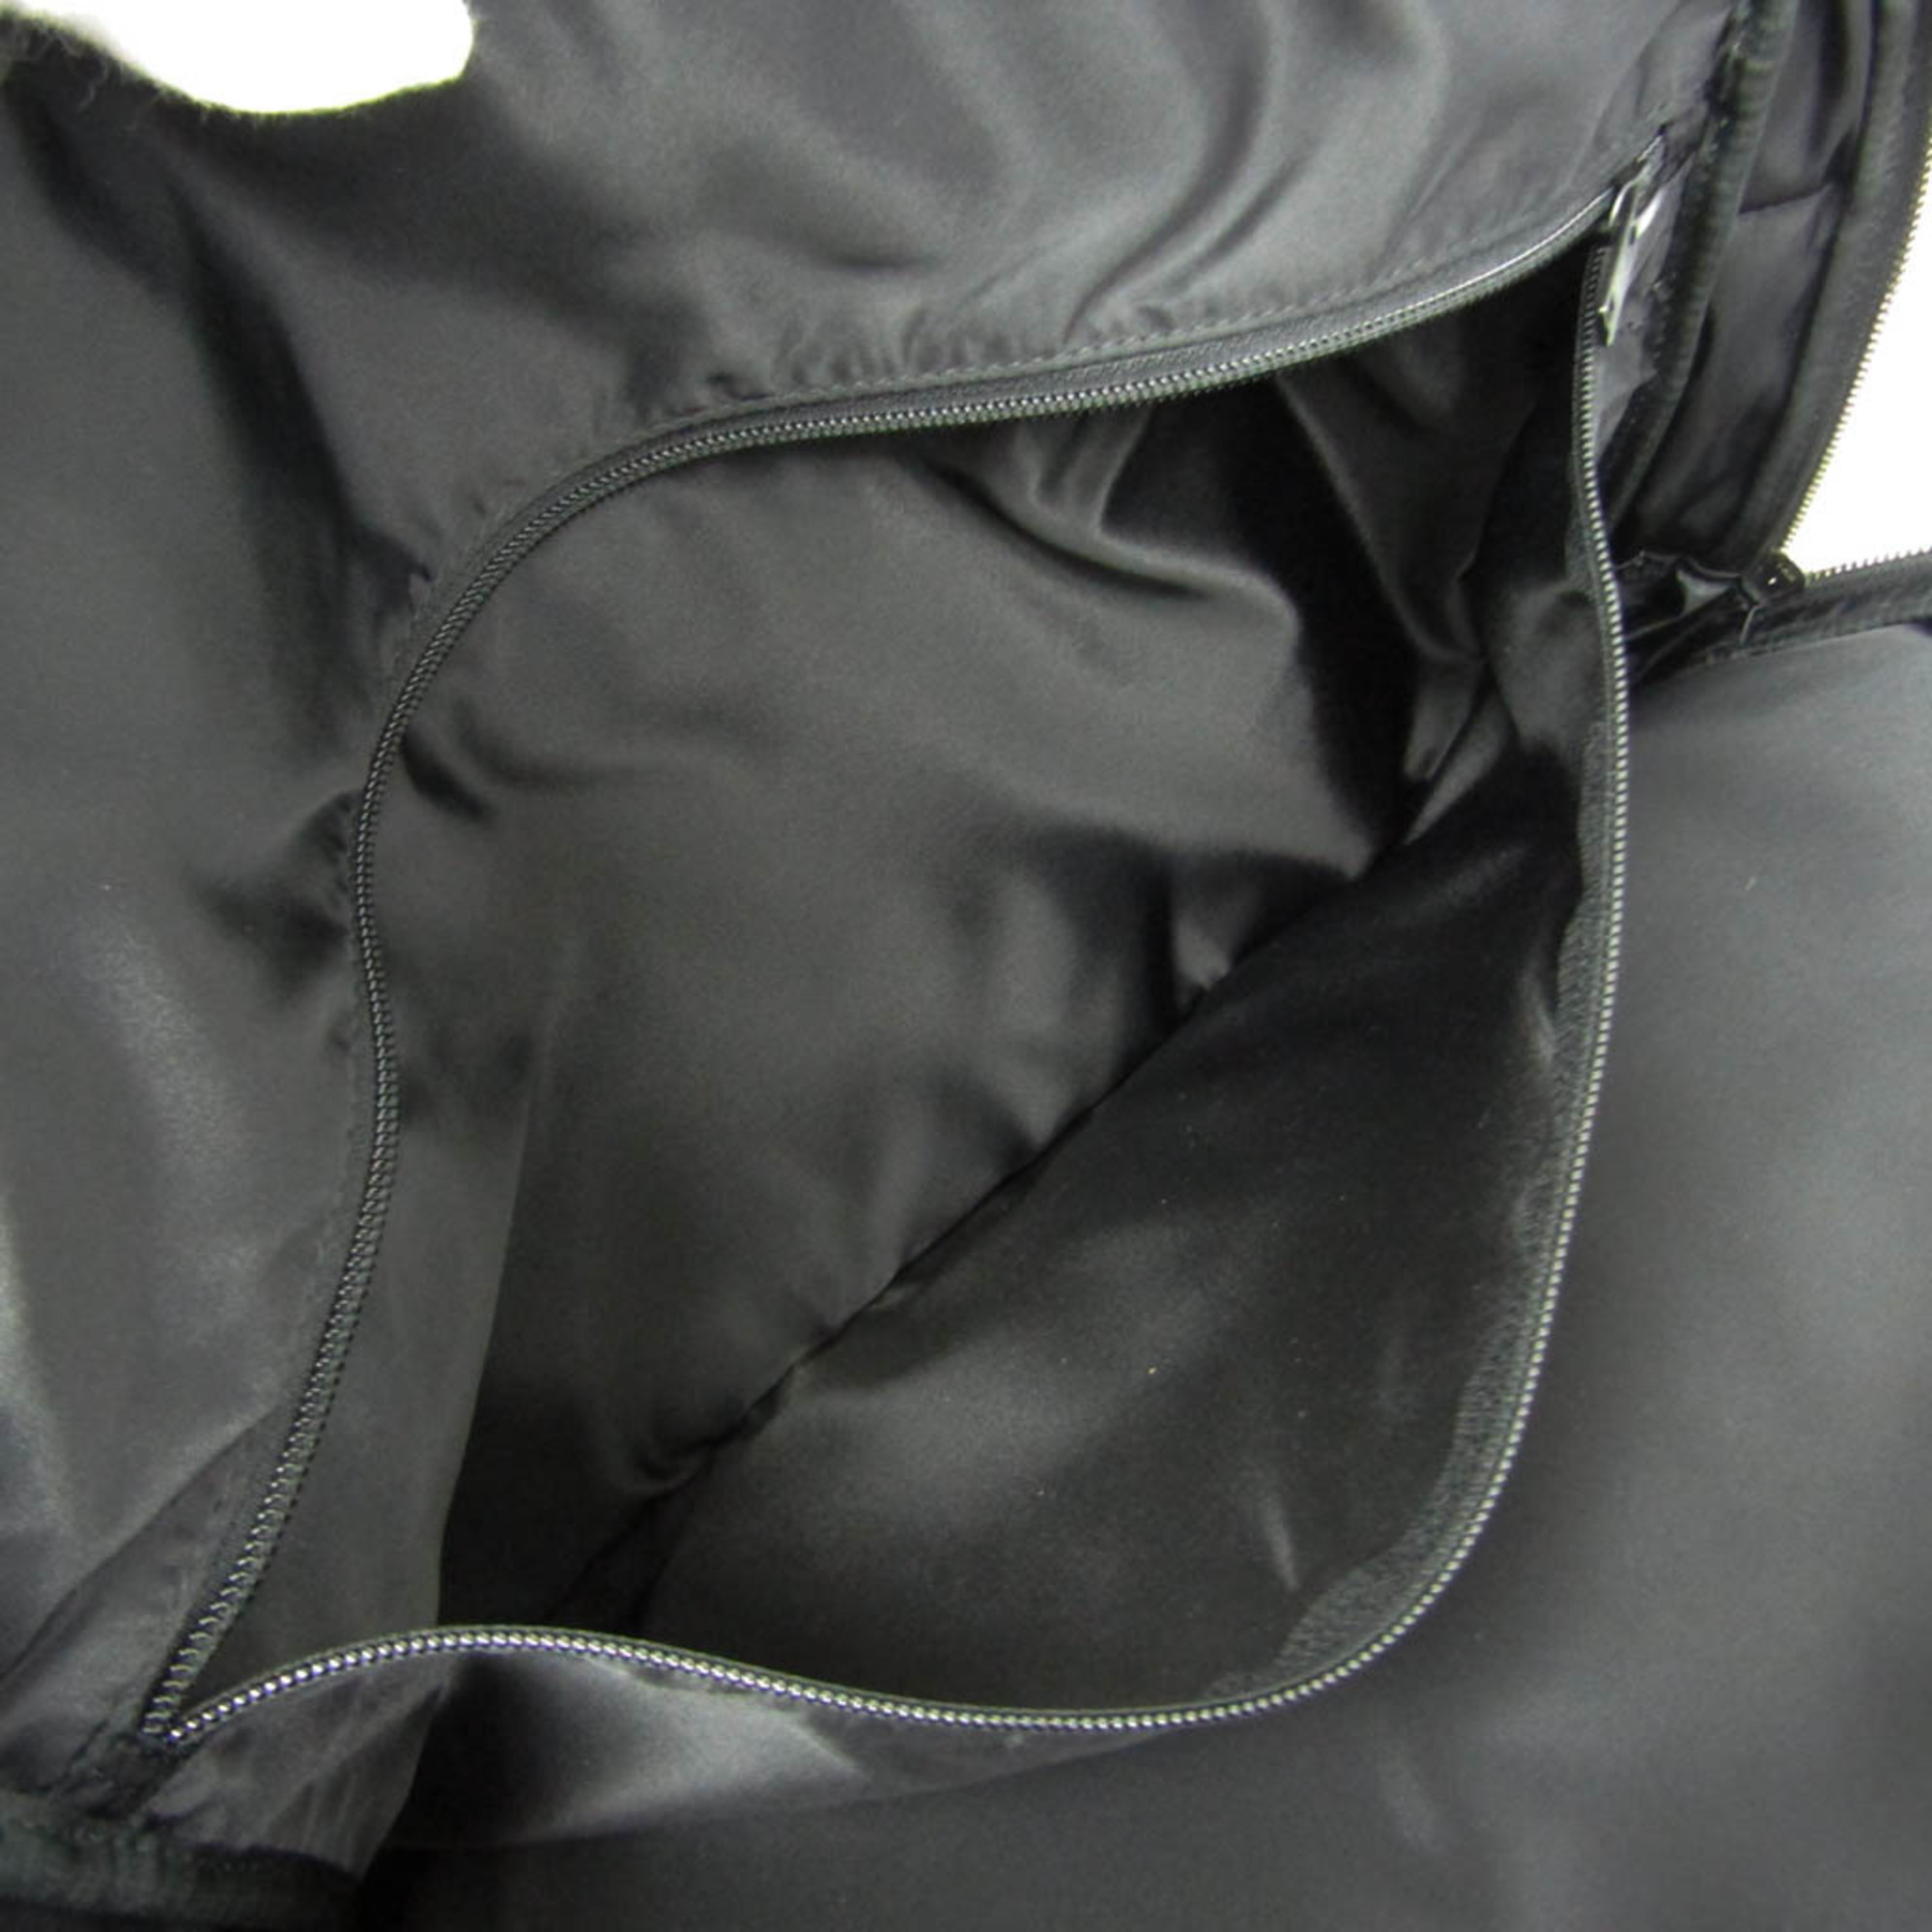 Porter Men's PVC,Leather Briefcase,Shoulder Bag Black